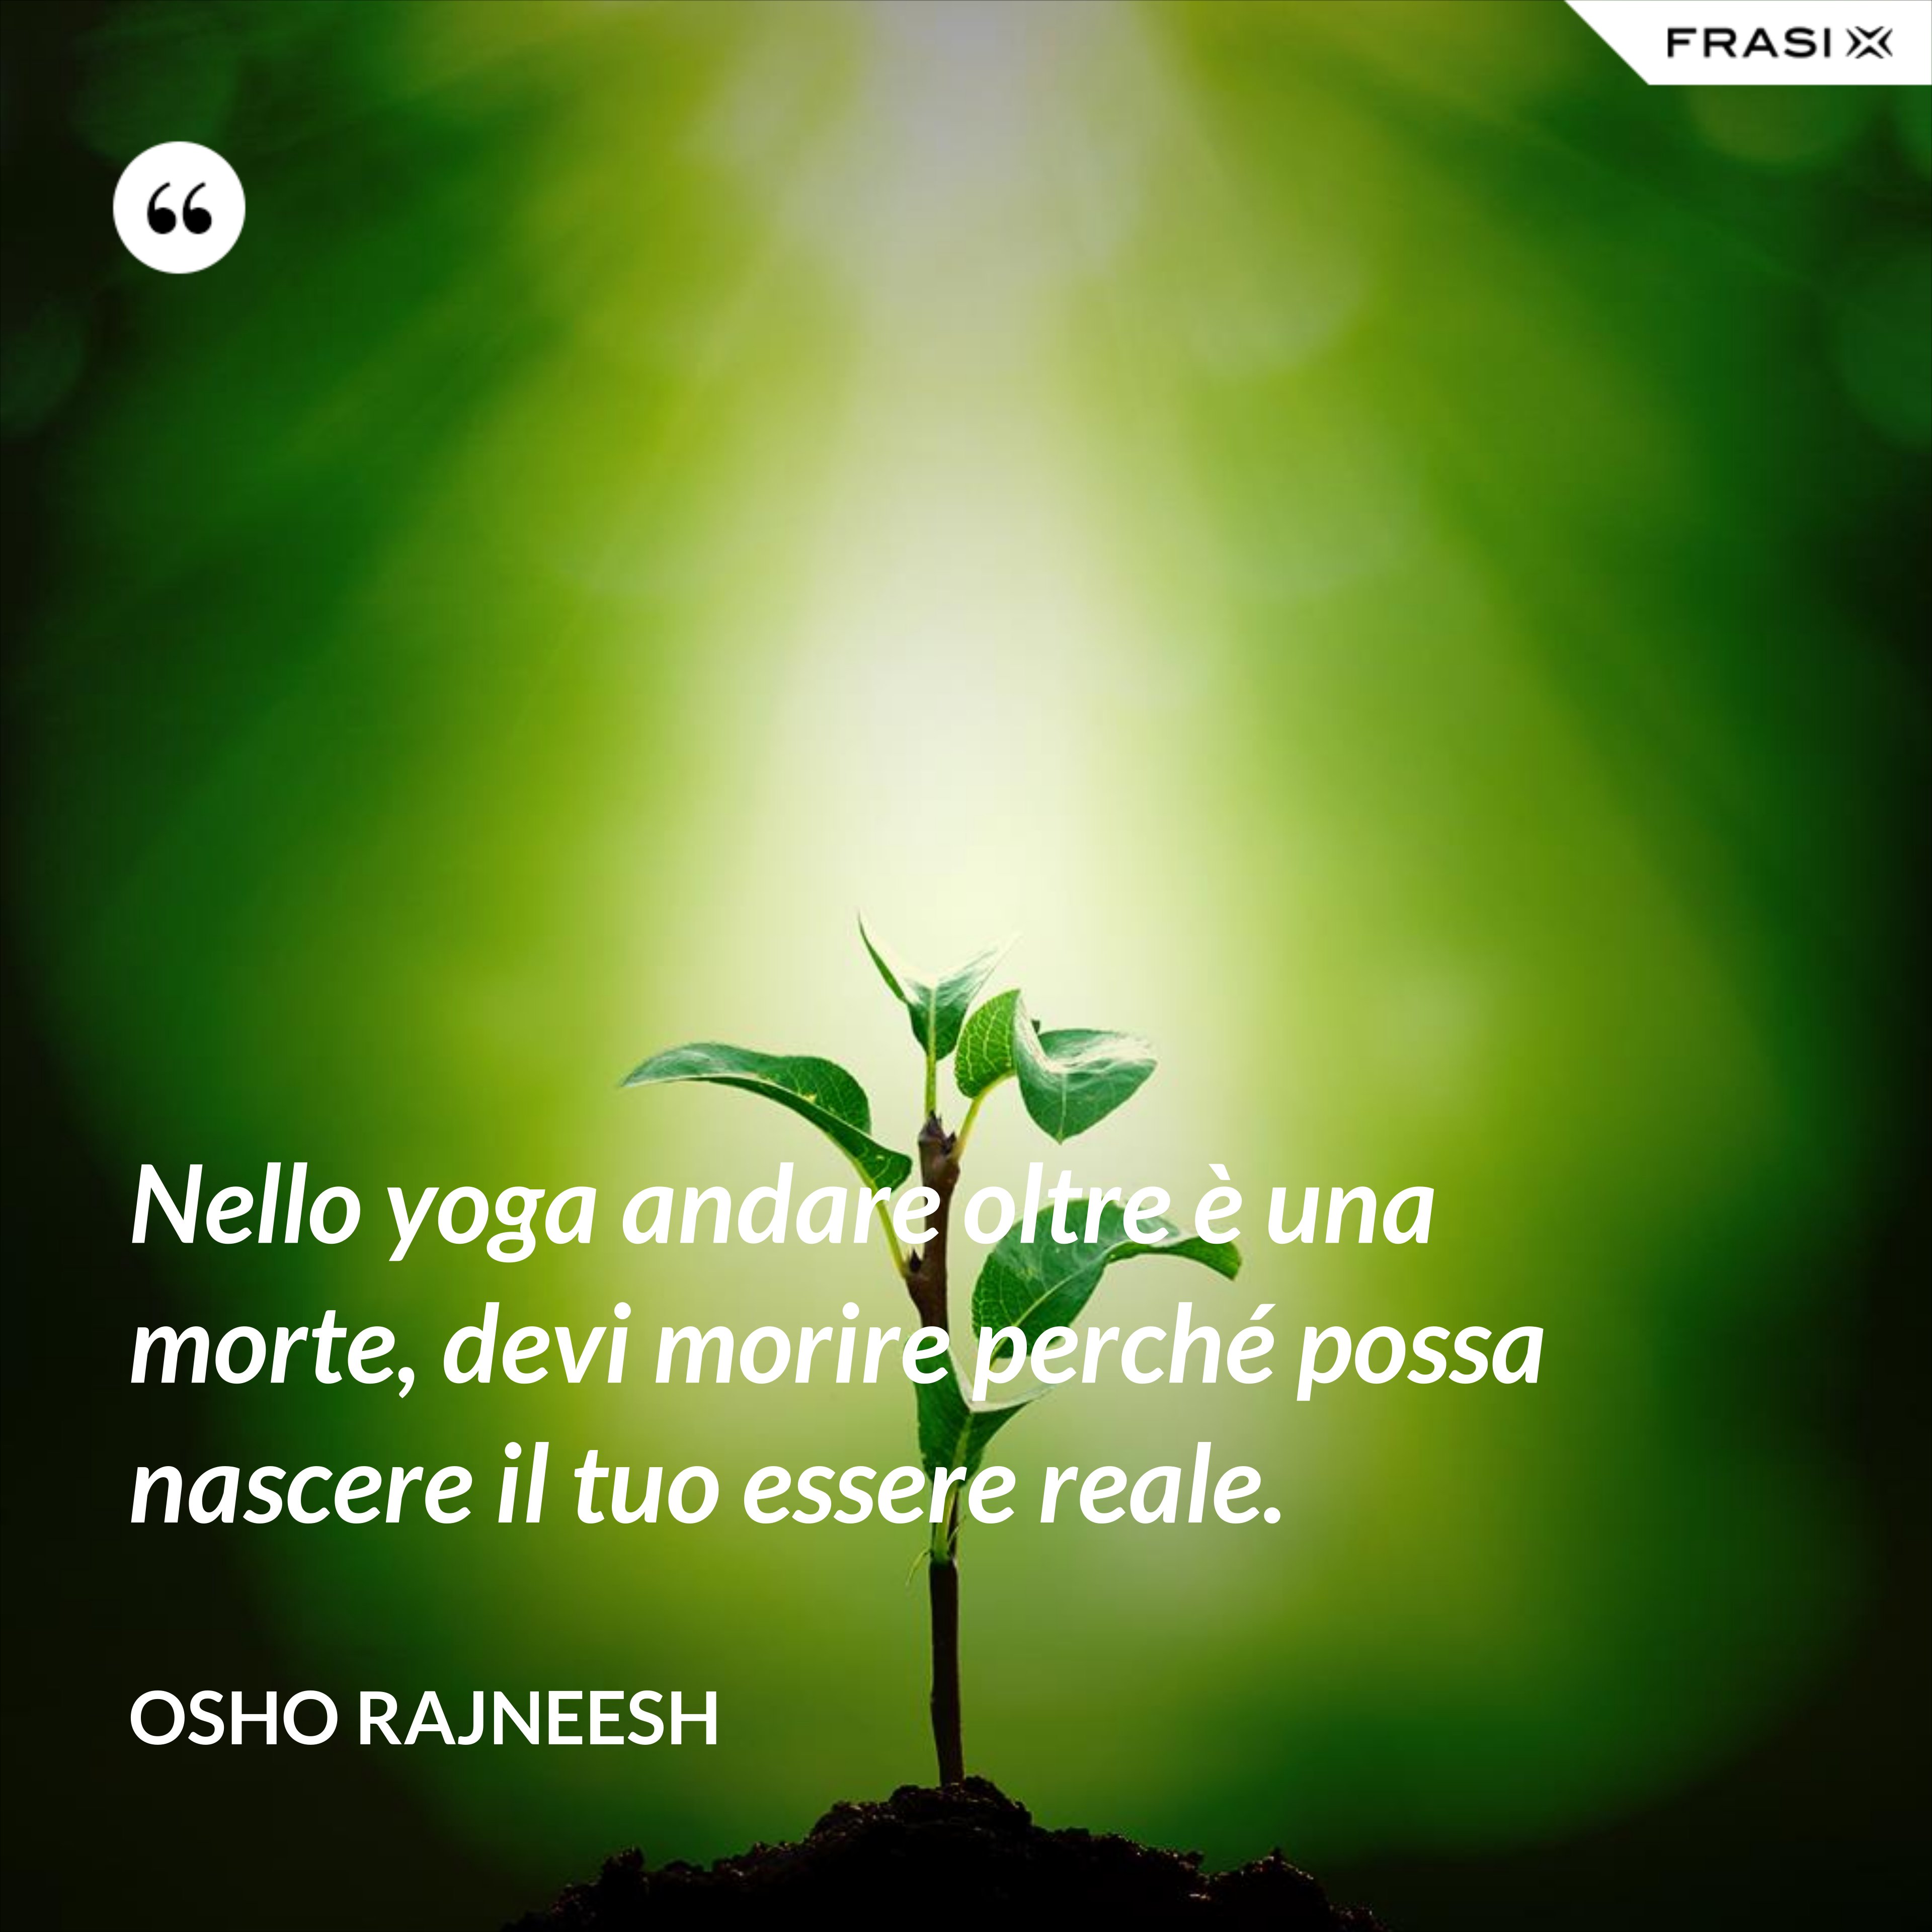 Nello yoga andare oltre è una morte, devi morire perché possa nascere il tuo essere reale. - Osho Rajneesh